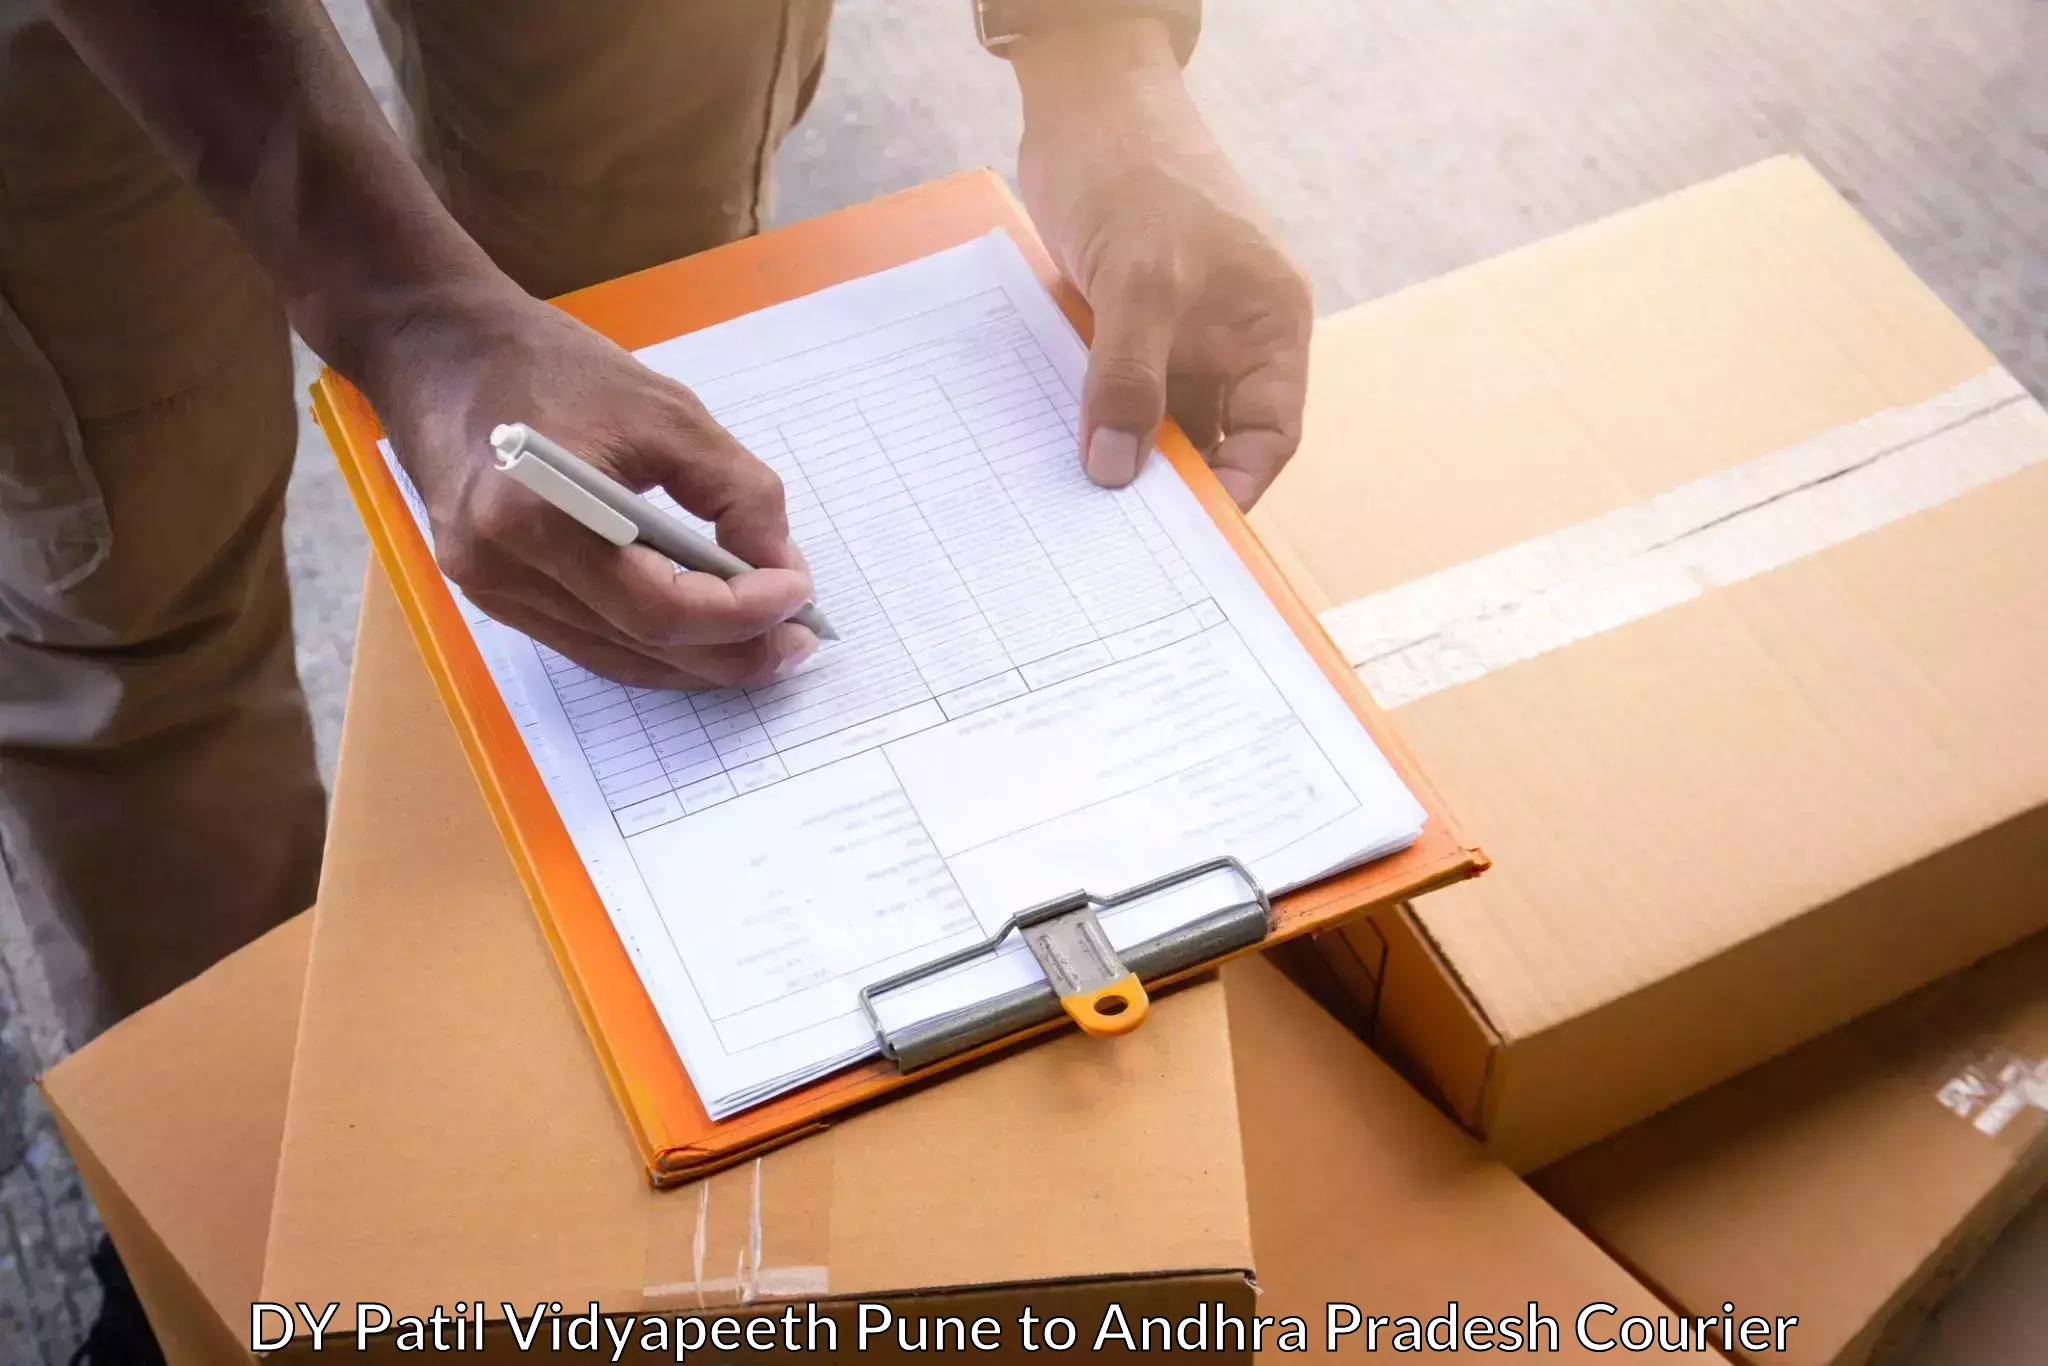 Bulk shipment DY Patil Vidyapeeth Pune to Nuzvid